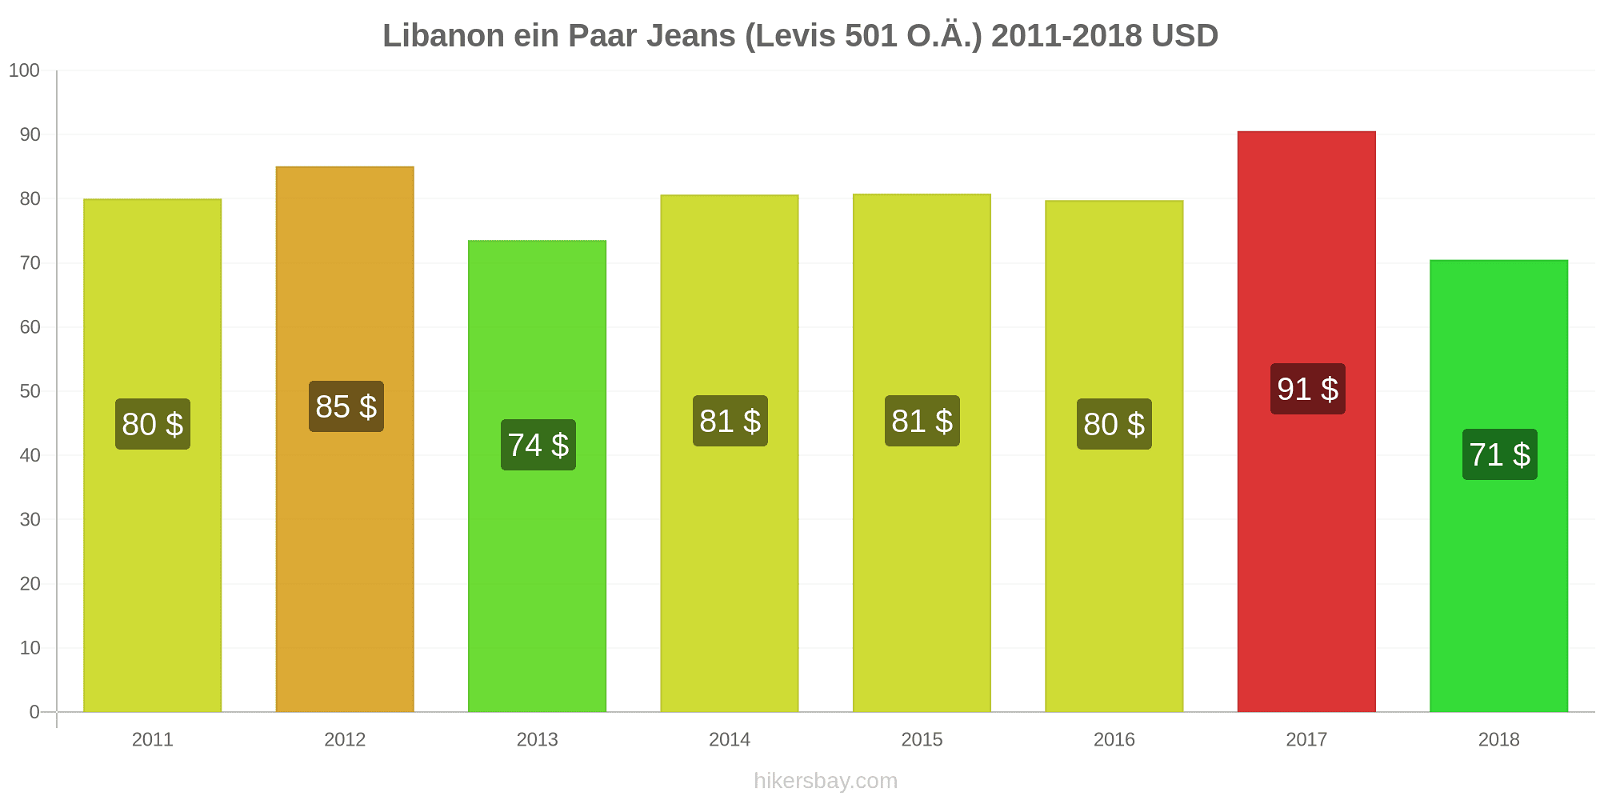 Libanon Preisänderungen 1 Paar Jeans (Levis 501 oder ähnlich) hikersbay.com